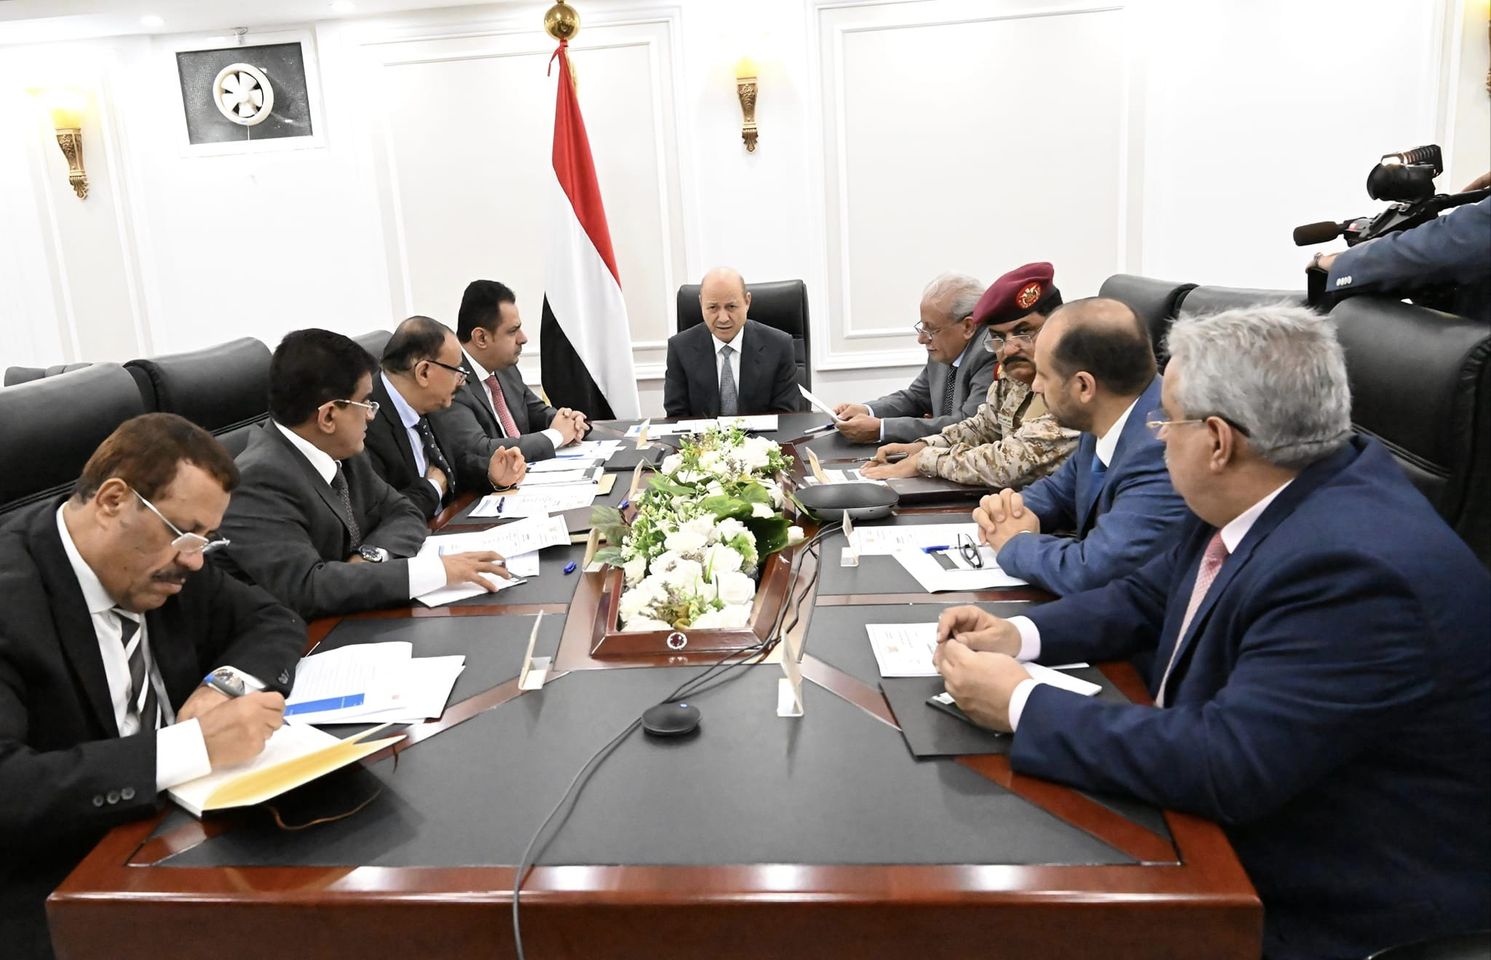 مجلس القيادة الرئاسي... قرارات عرجاء لتصنيف الإرهاب الحوثي 